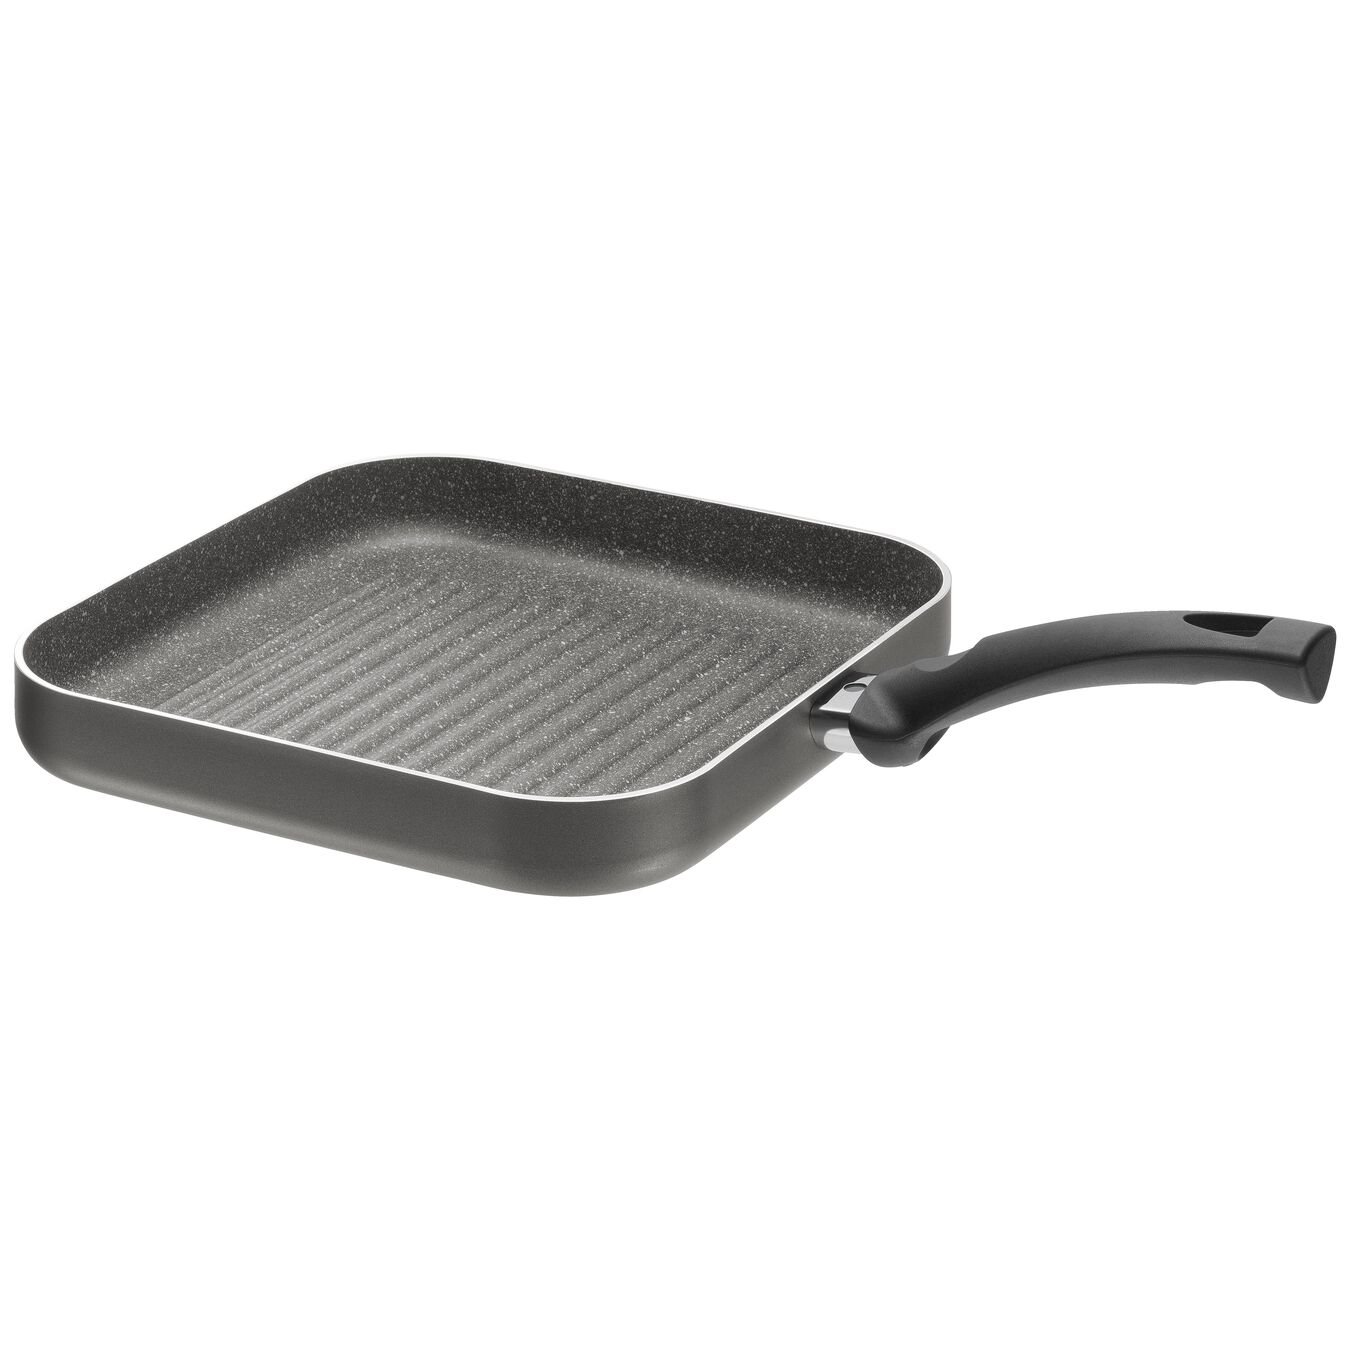 27 cm square Aluminium Grill pan,,large 2